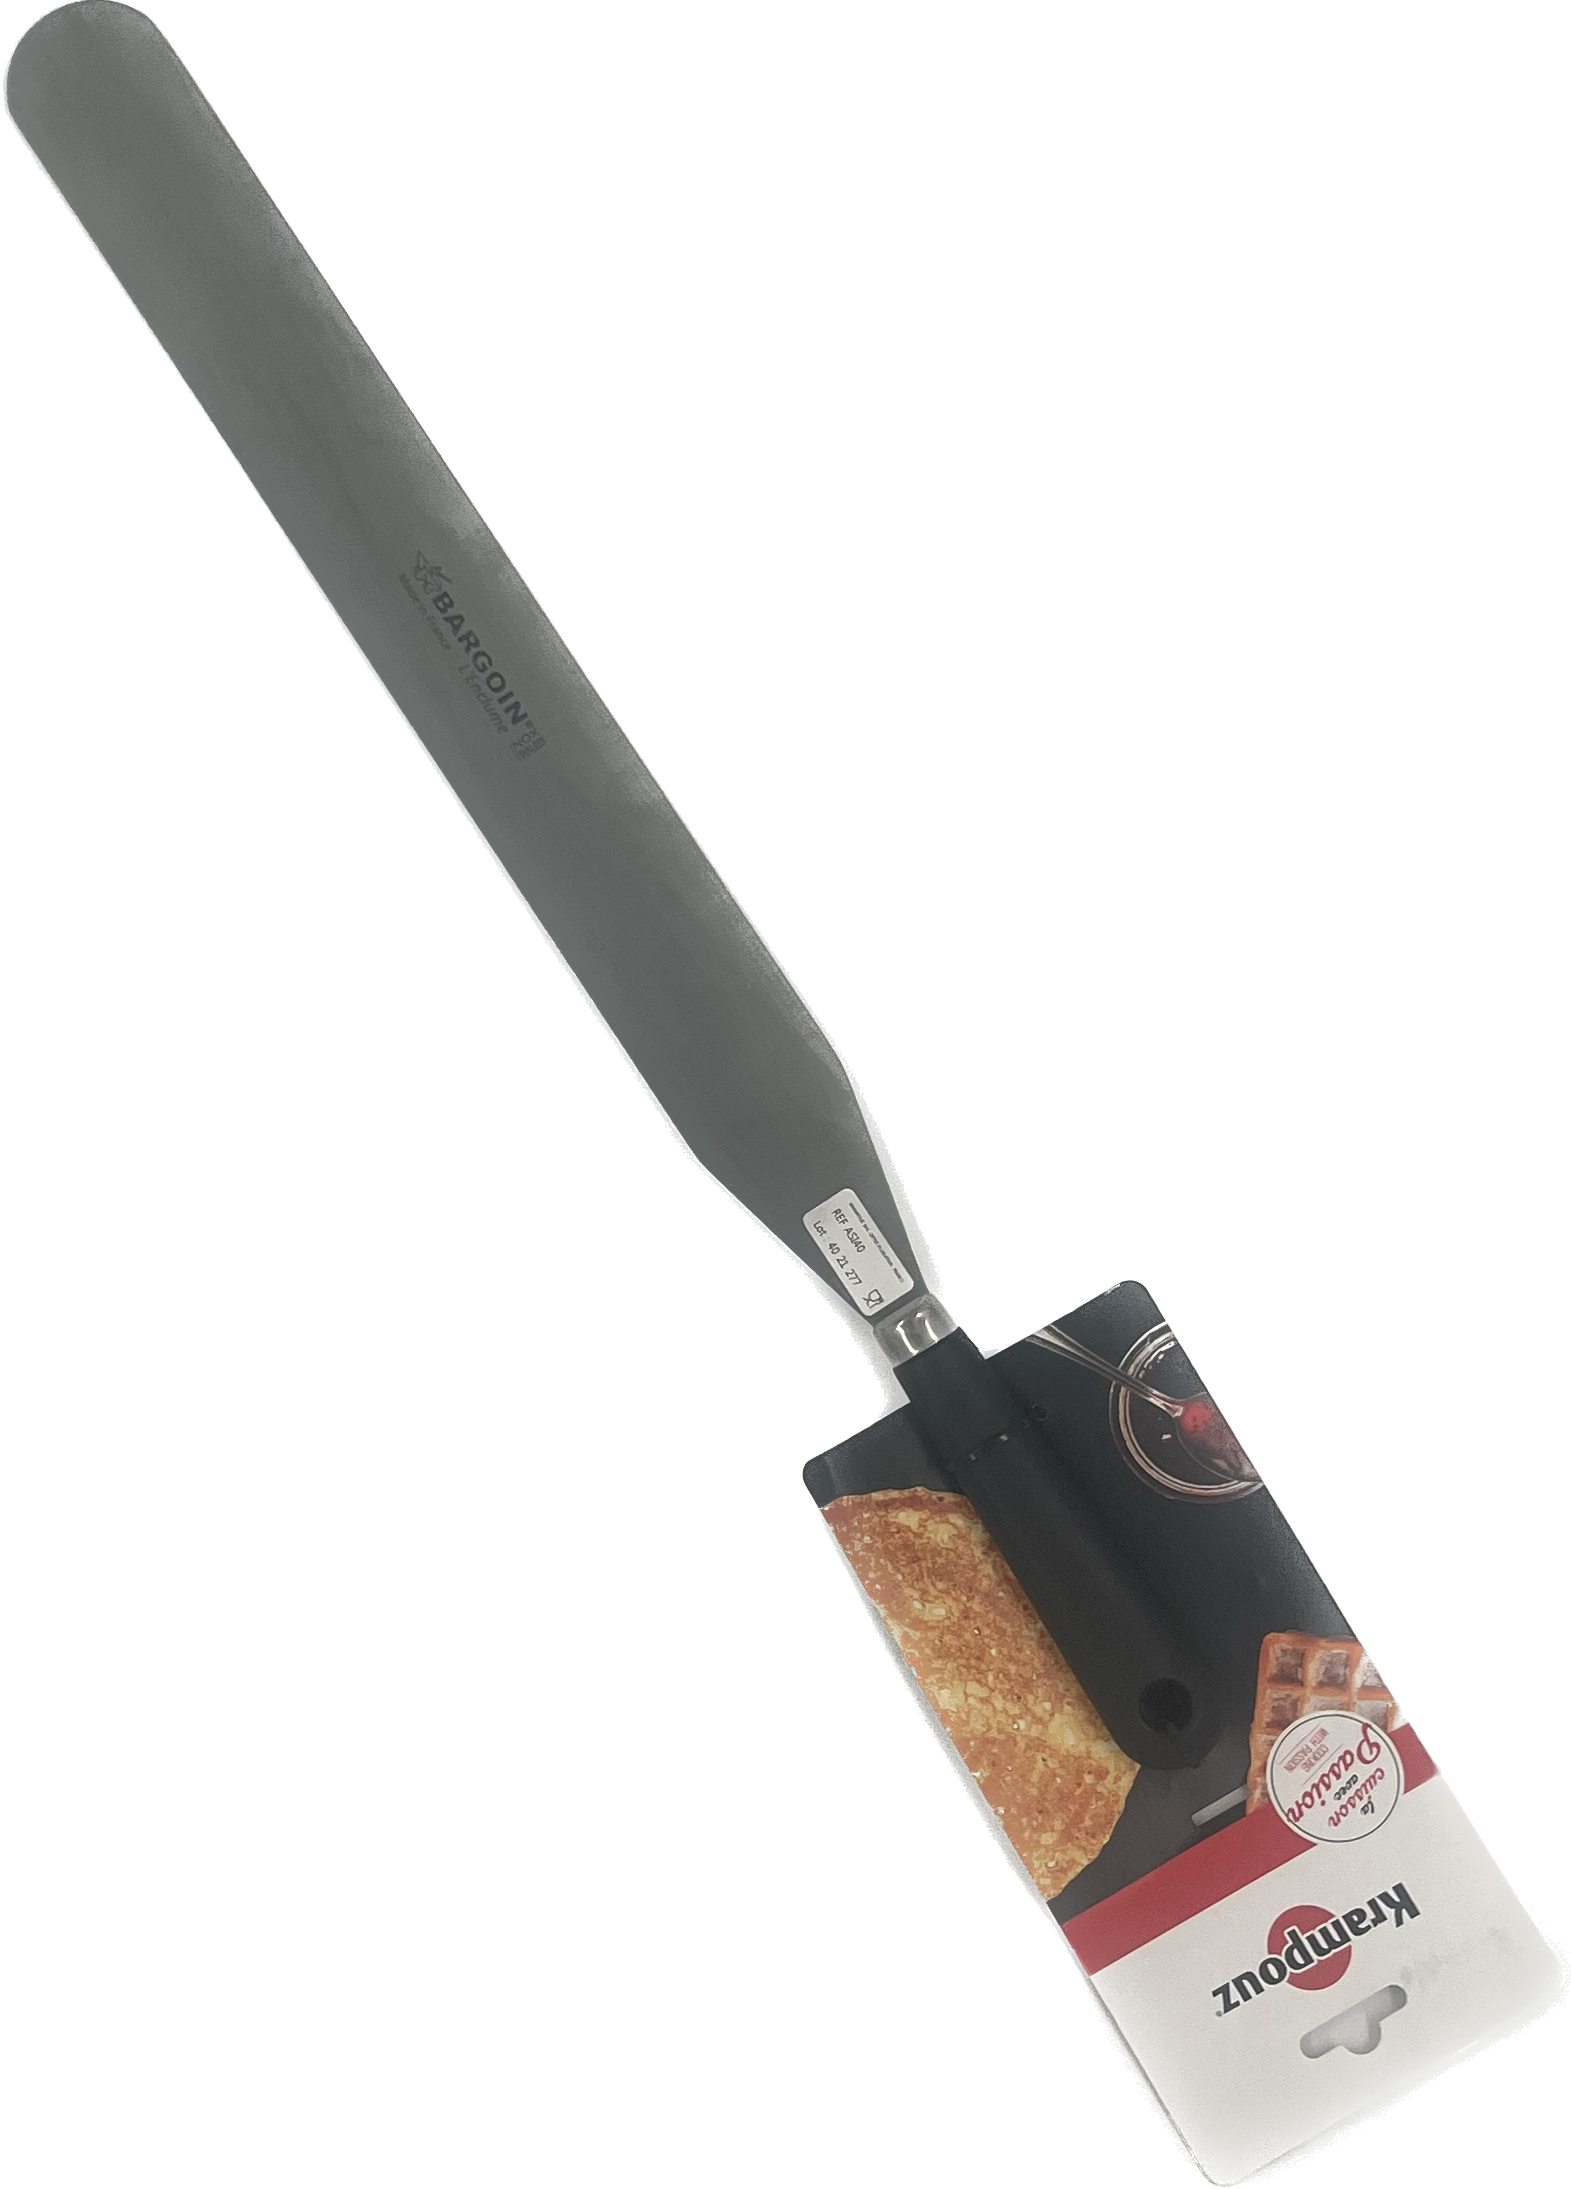 Glazin knife stainless steel 35 cm